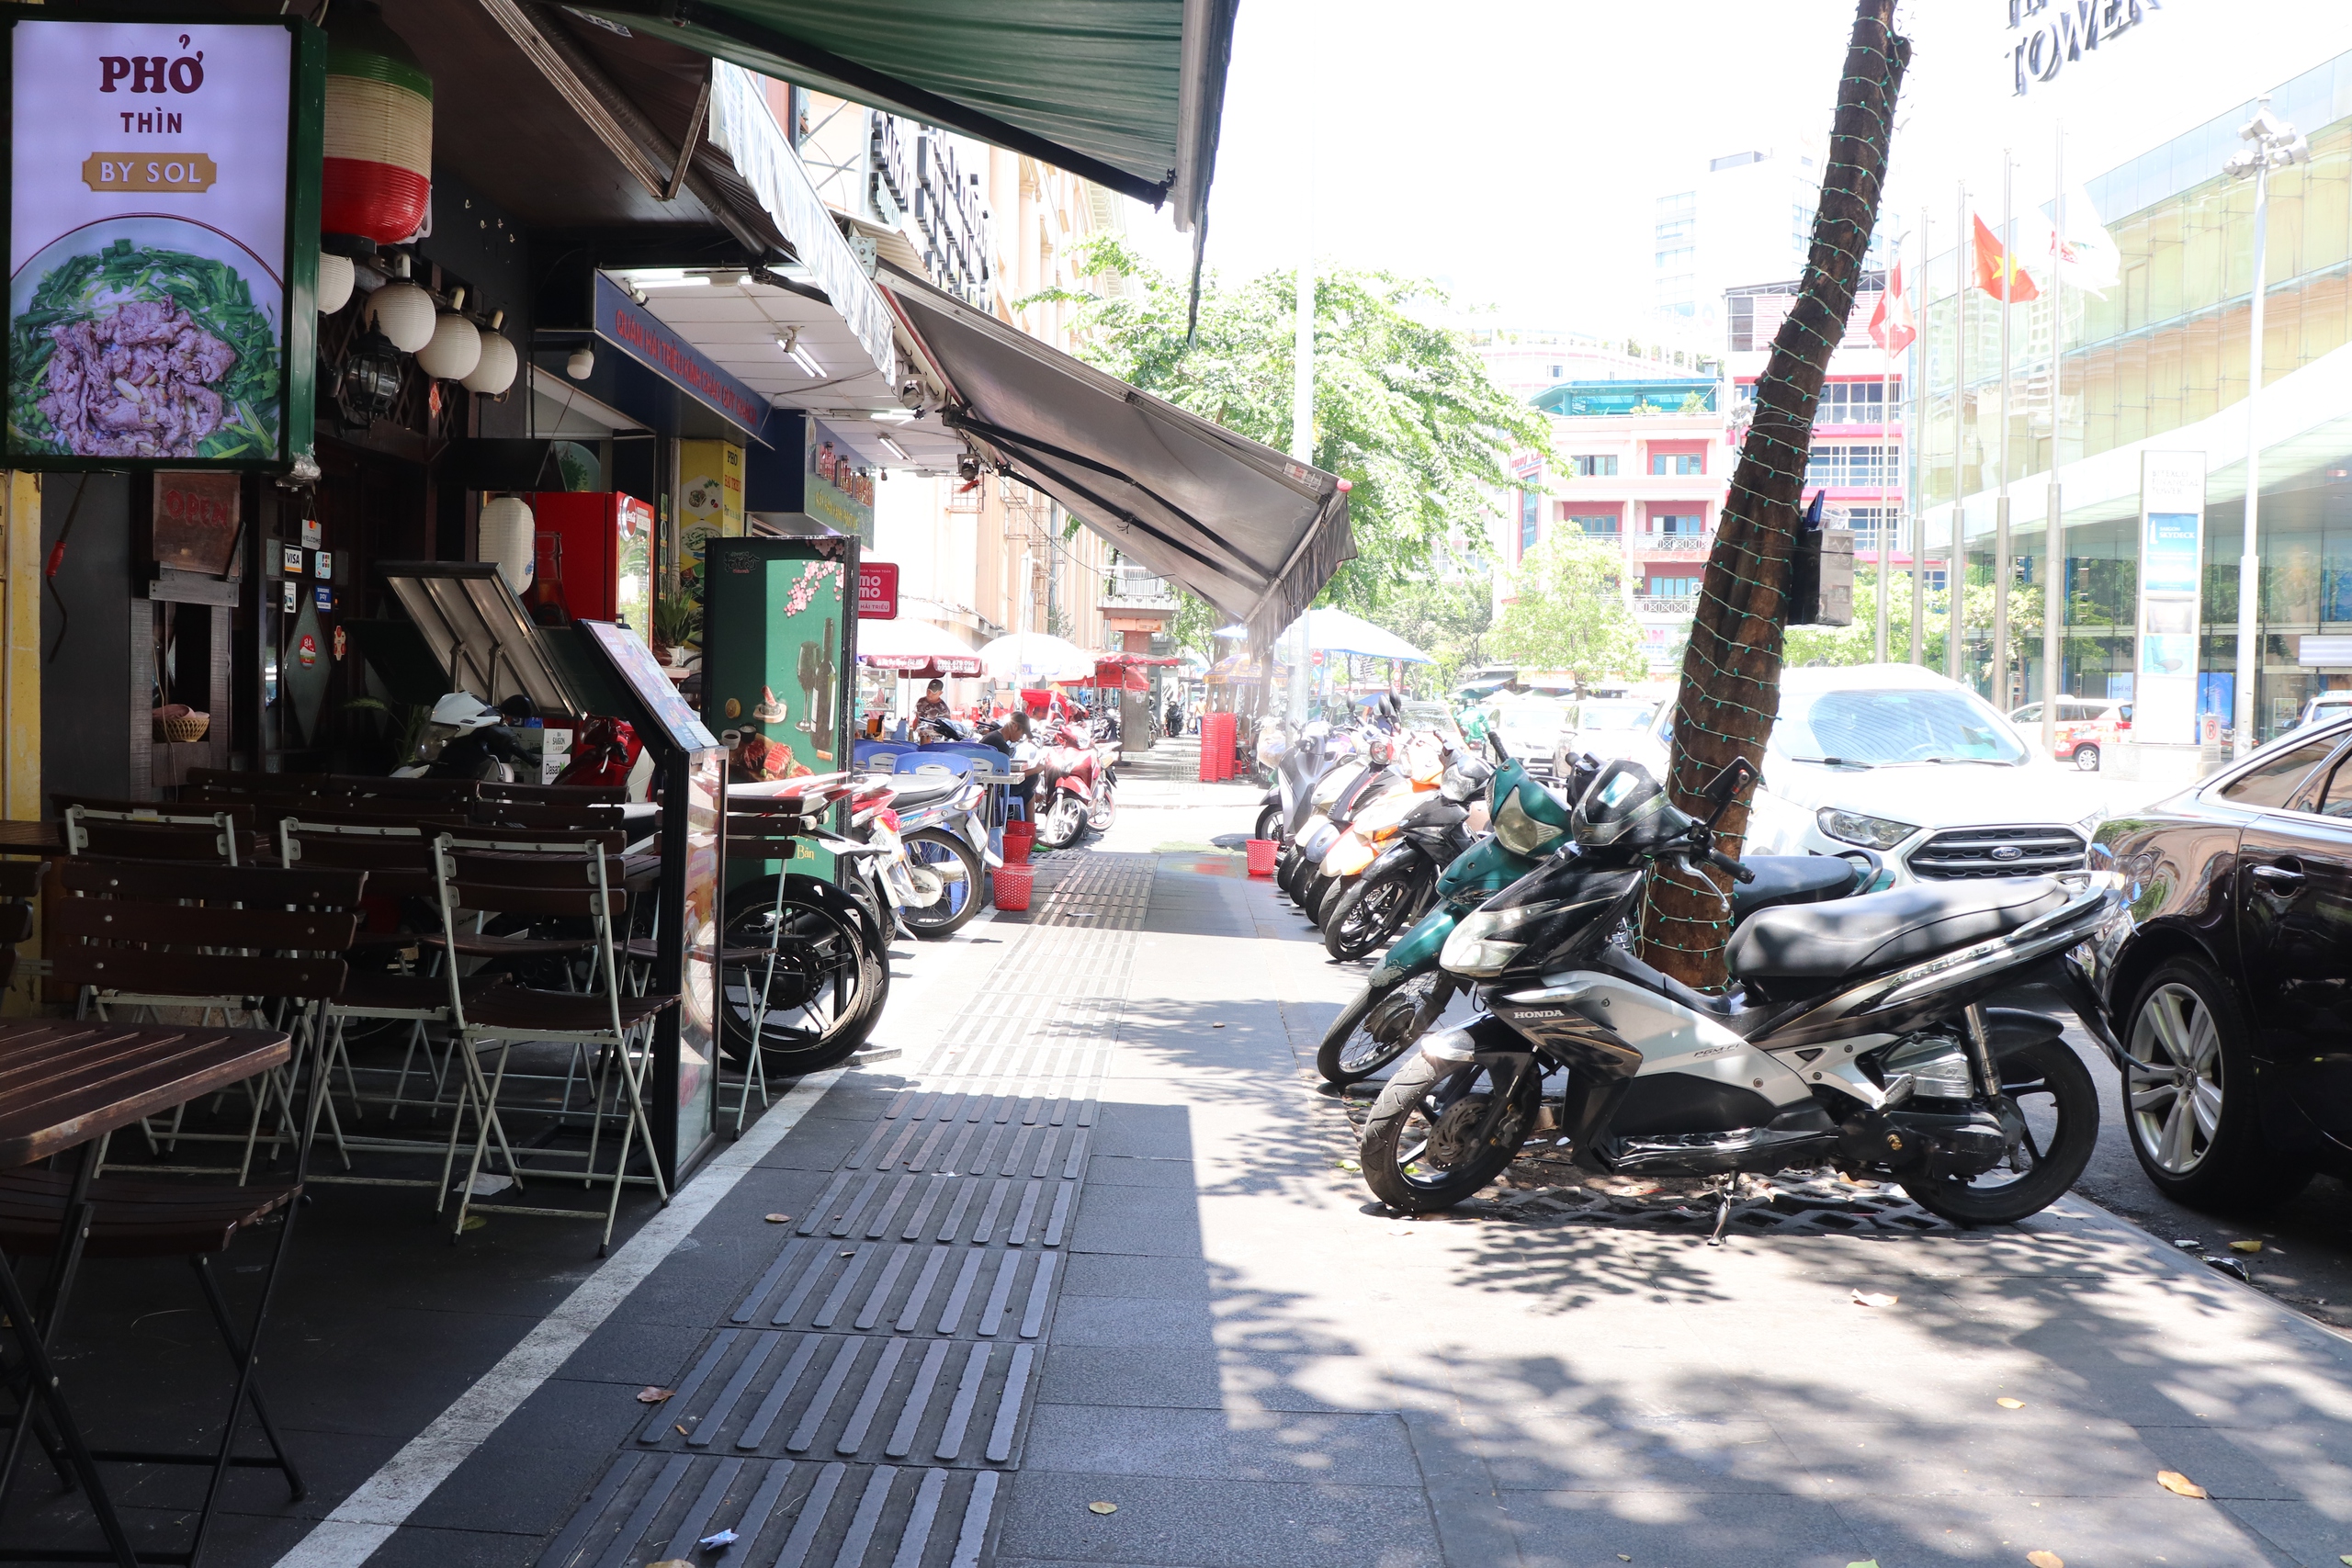 Vỉa hè được chia làm 2 vạch, một bên là để hàng quán kinh doanh buôn bán, một bên để xe máy, và phần giữa để cho người đi bộ